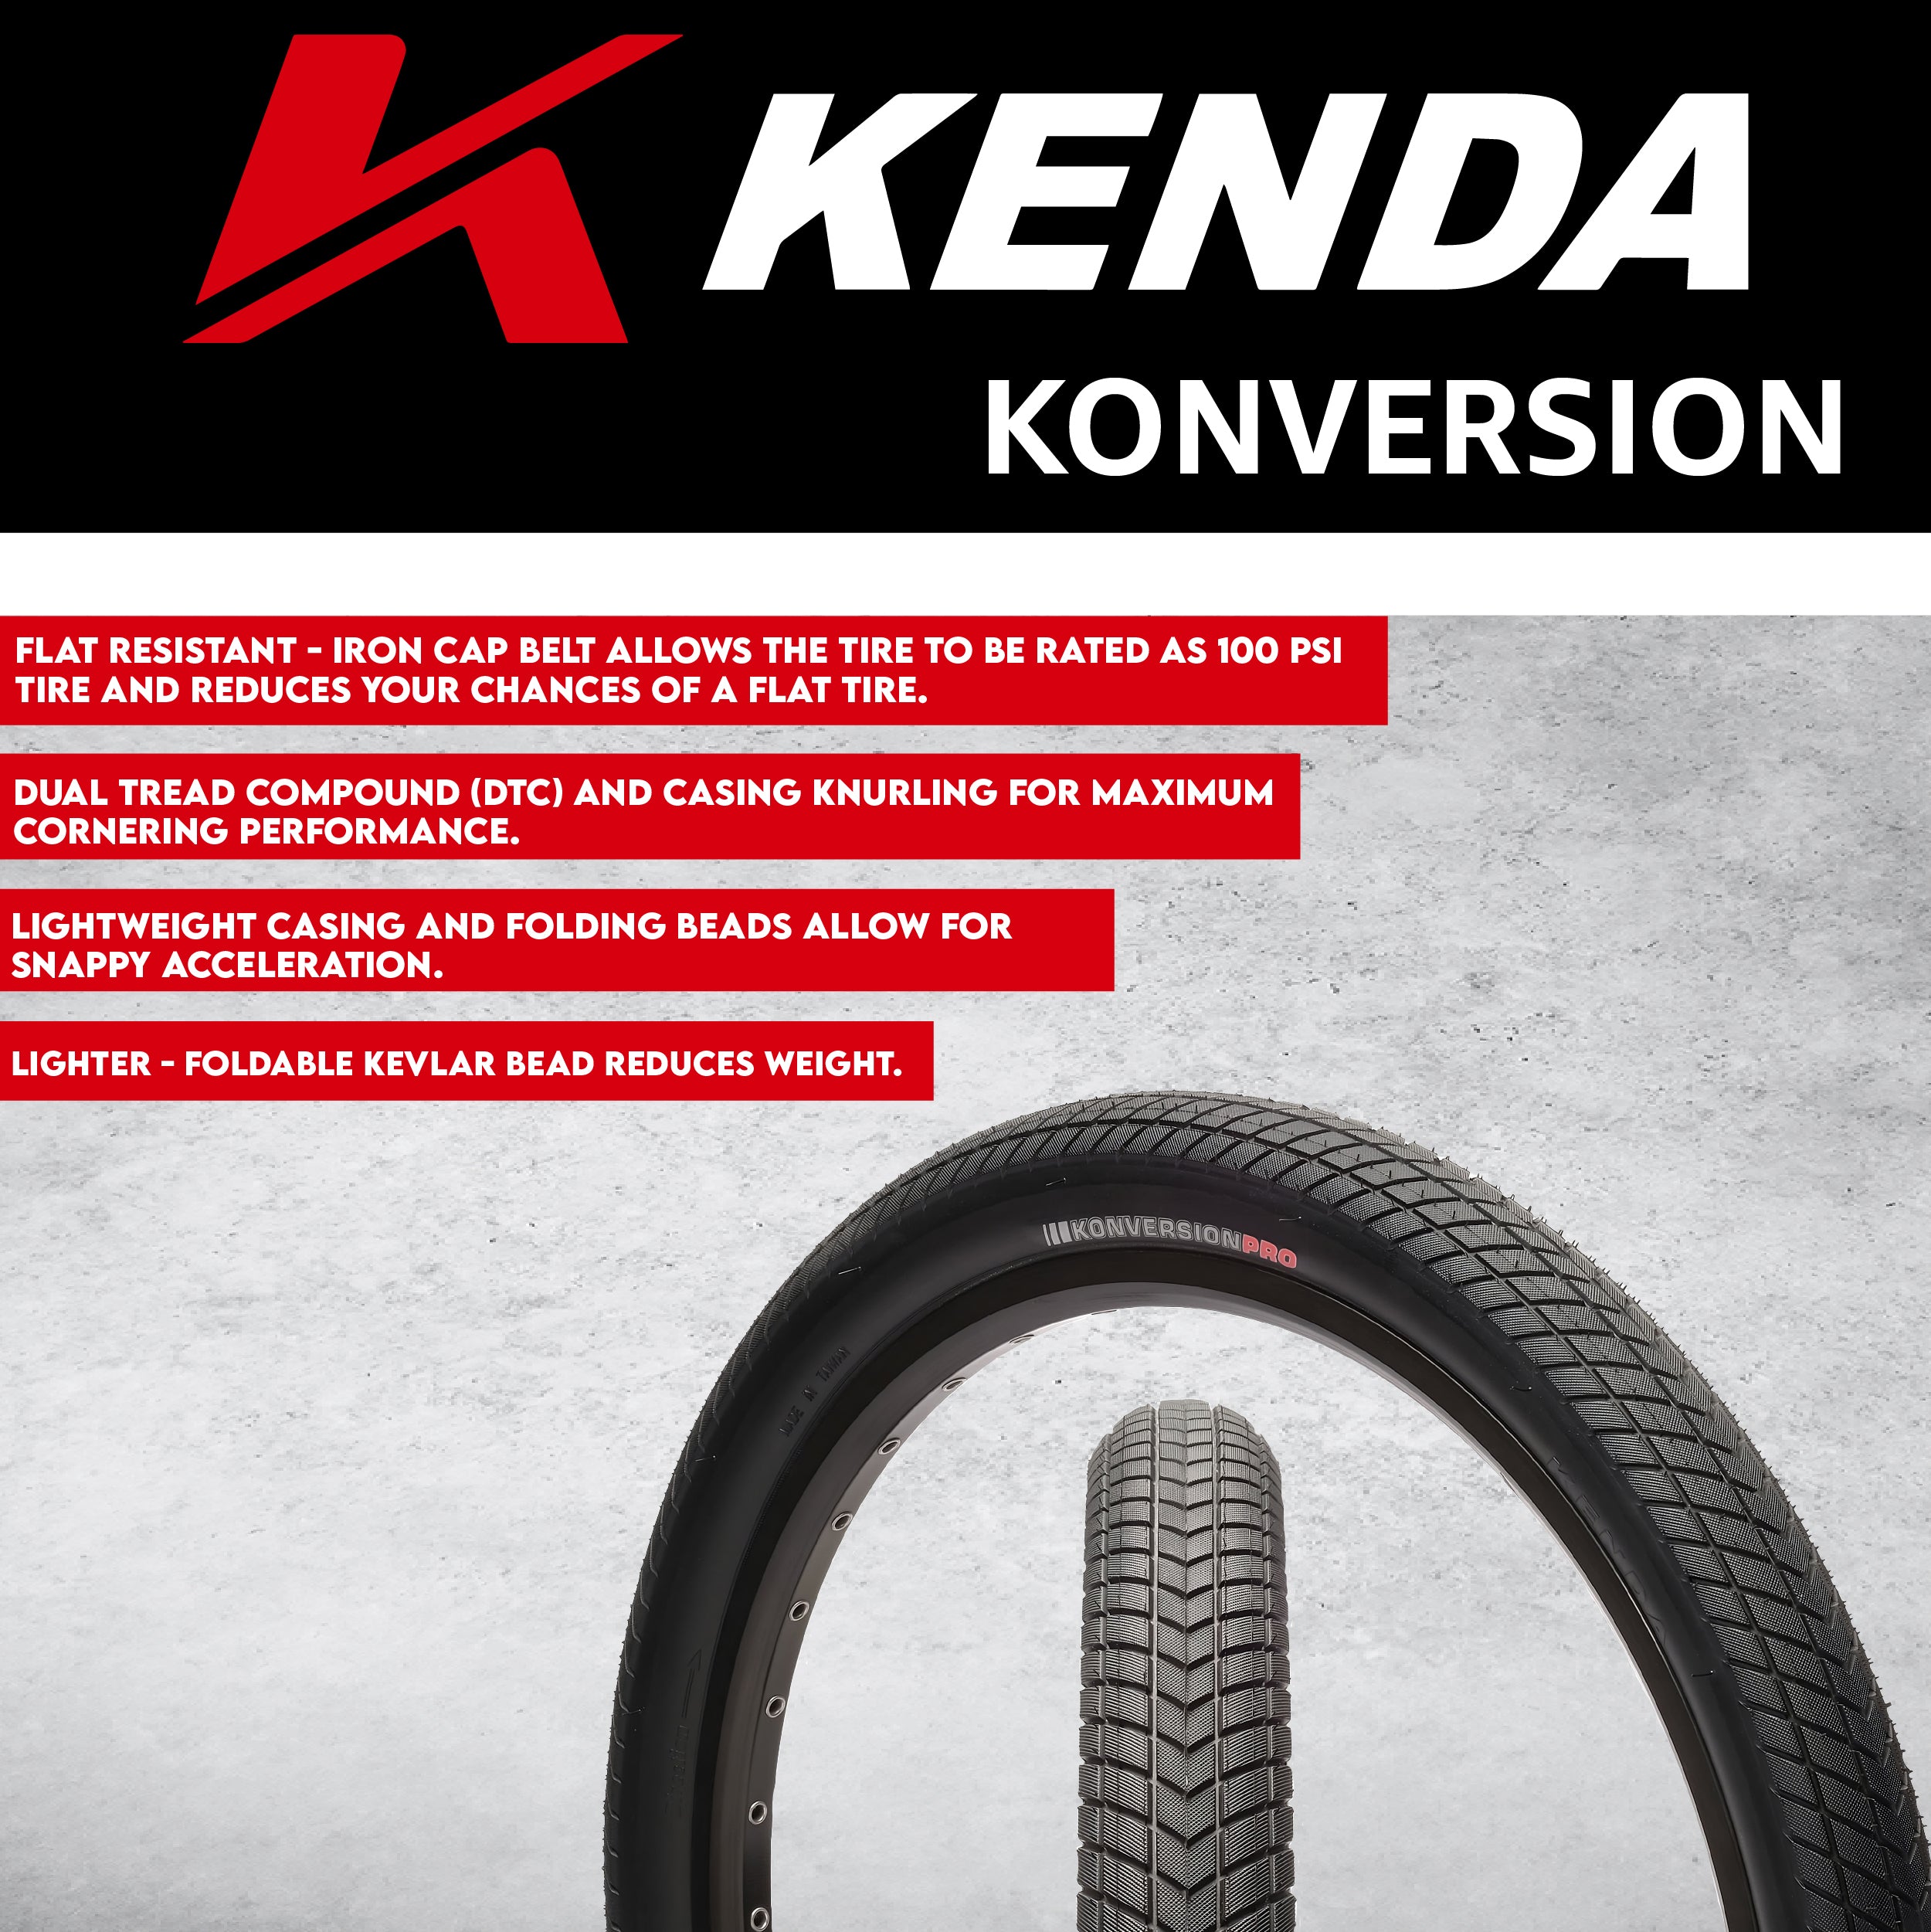 Kenda Konversion Pro 120tpi Fold 20x1.95 20x1.75 BMX Tire & Keychain (Two Pack)